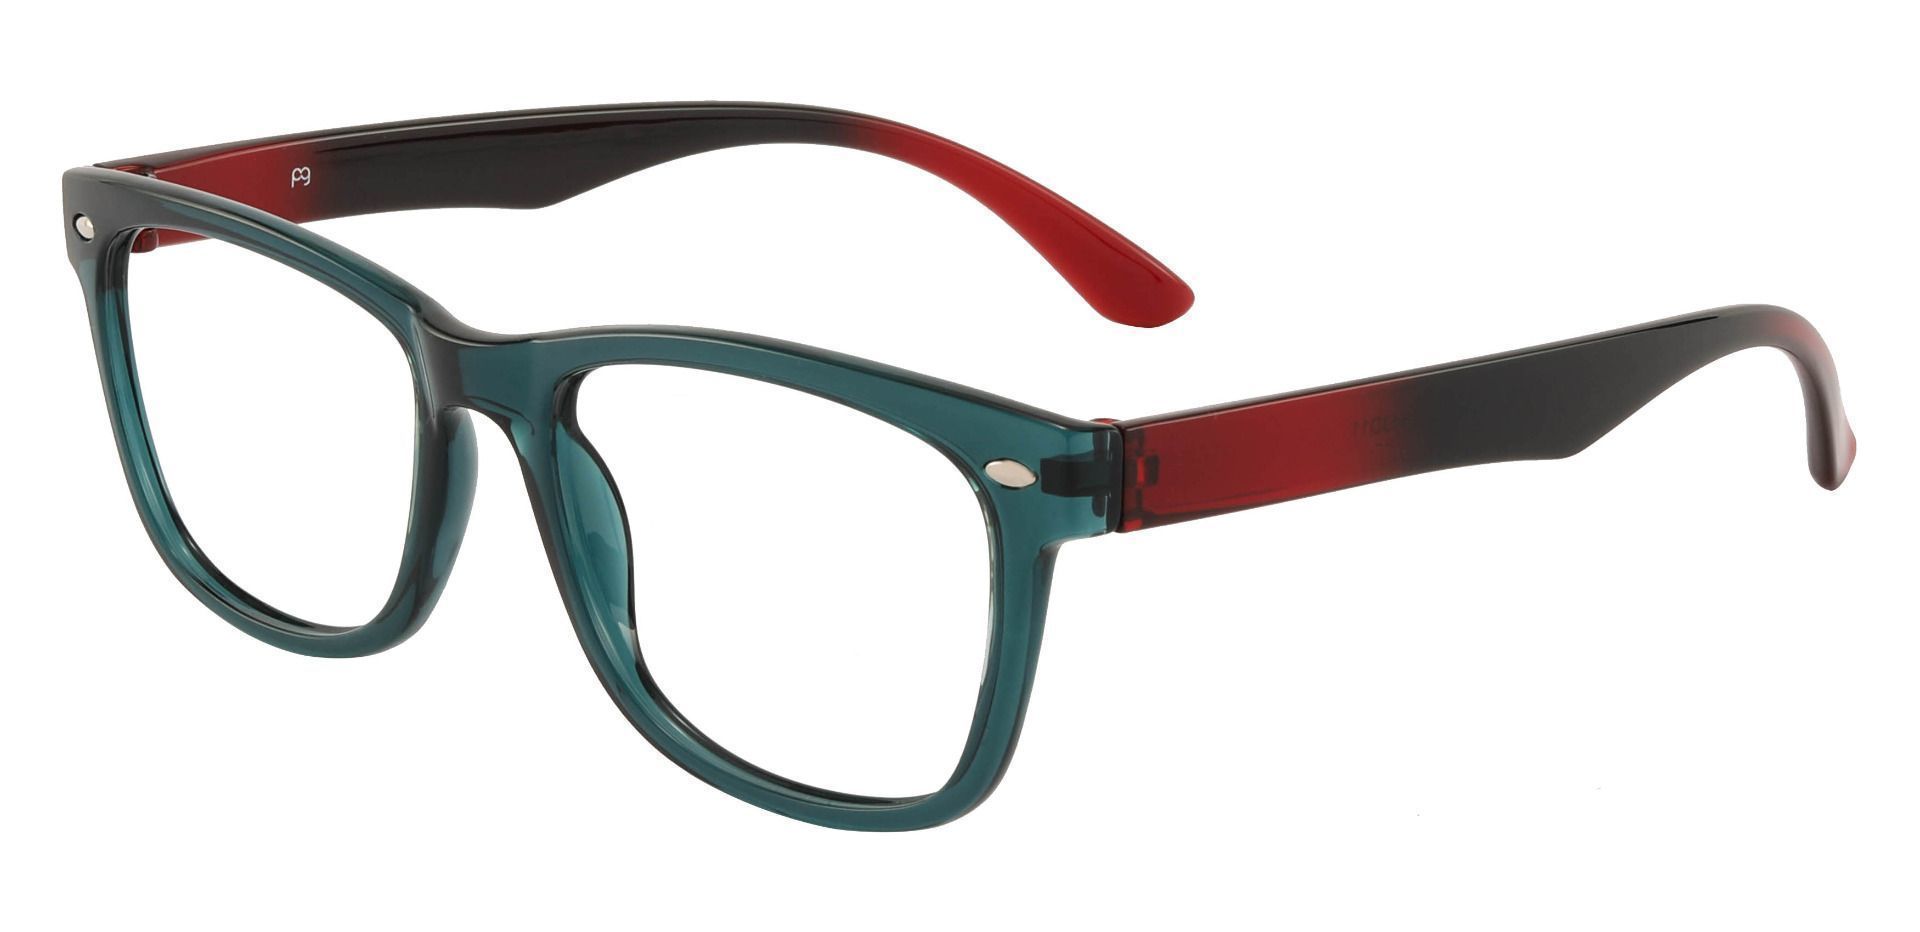 Oscar Rectangle Non-Rx Glasses - Green